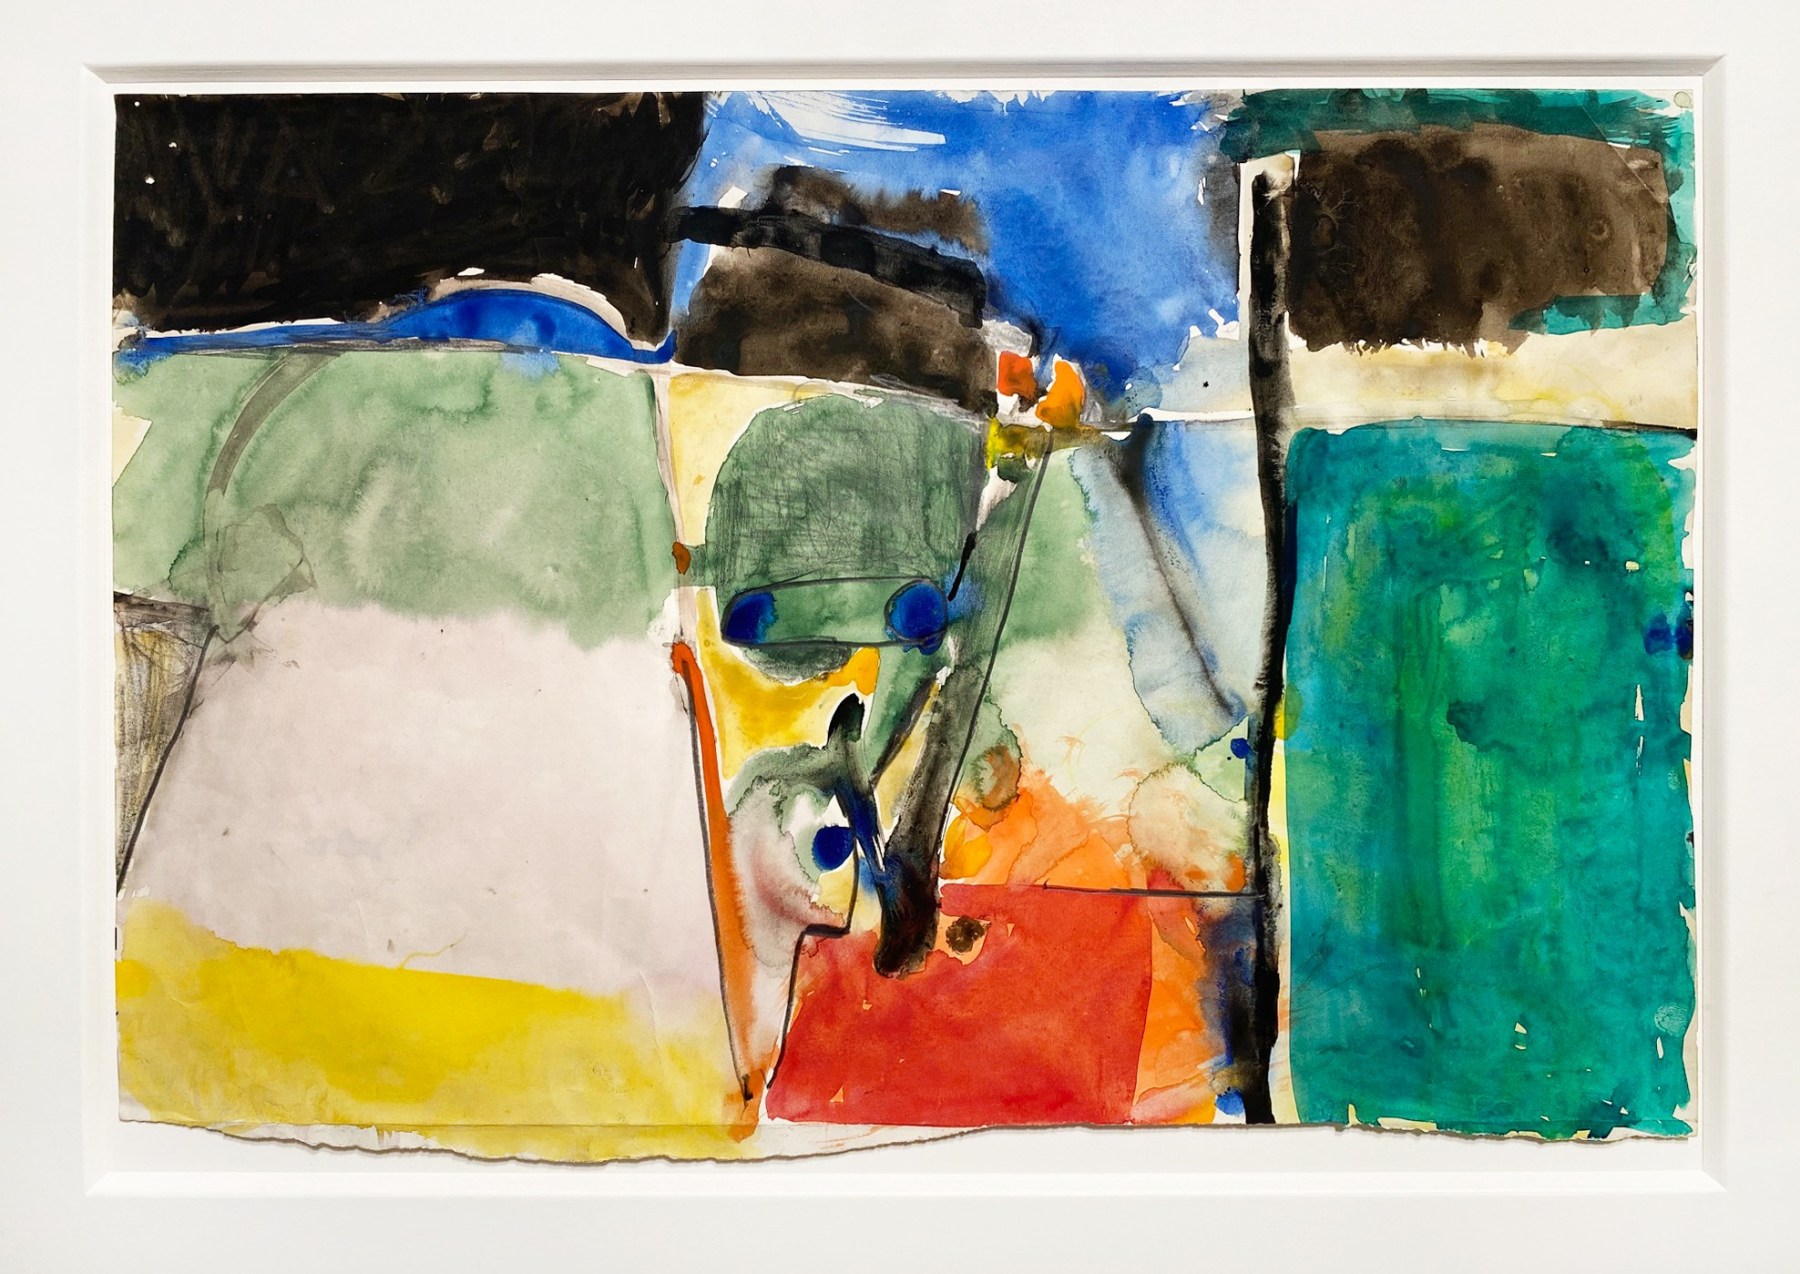 Richard Diebenkorn, Untitled, 1952-1953